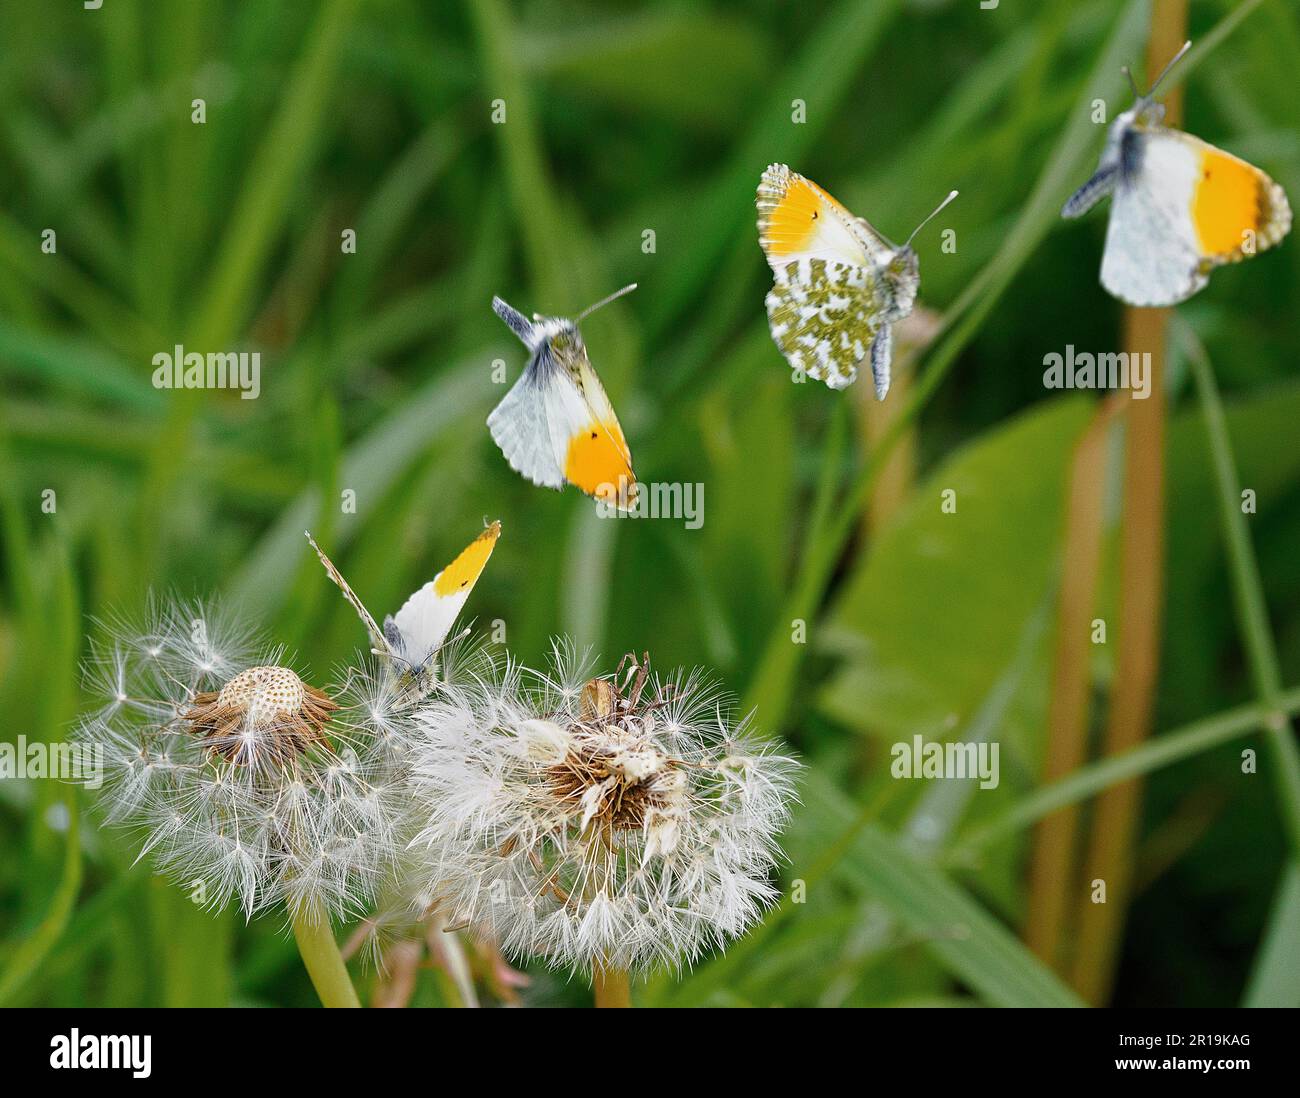 Immagine temporizzata composita di una farfalla maschio Orange Tip che lancia in volo da una testa di semi di dente di leone - Somerset UK Foto Stock